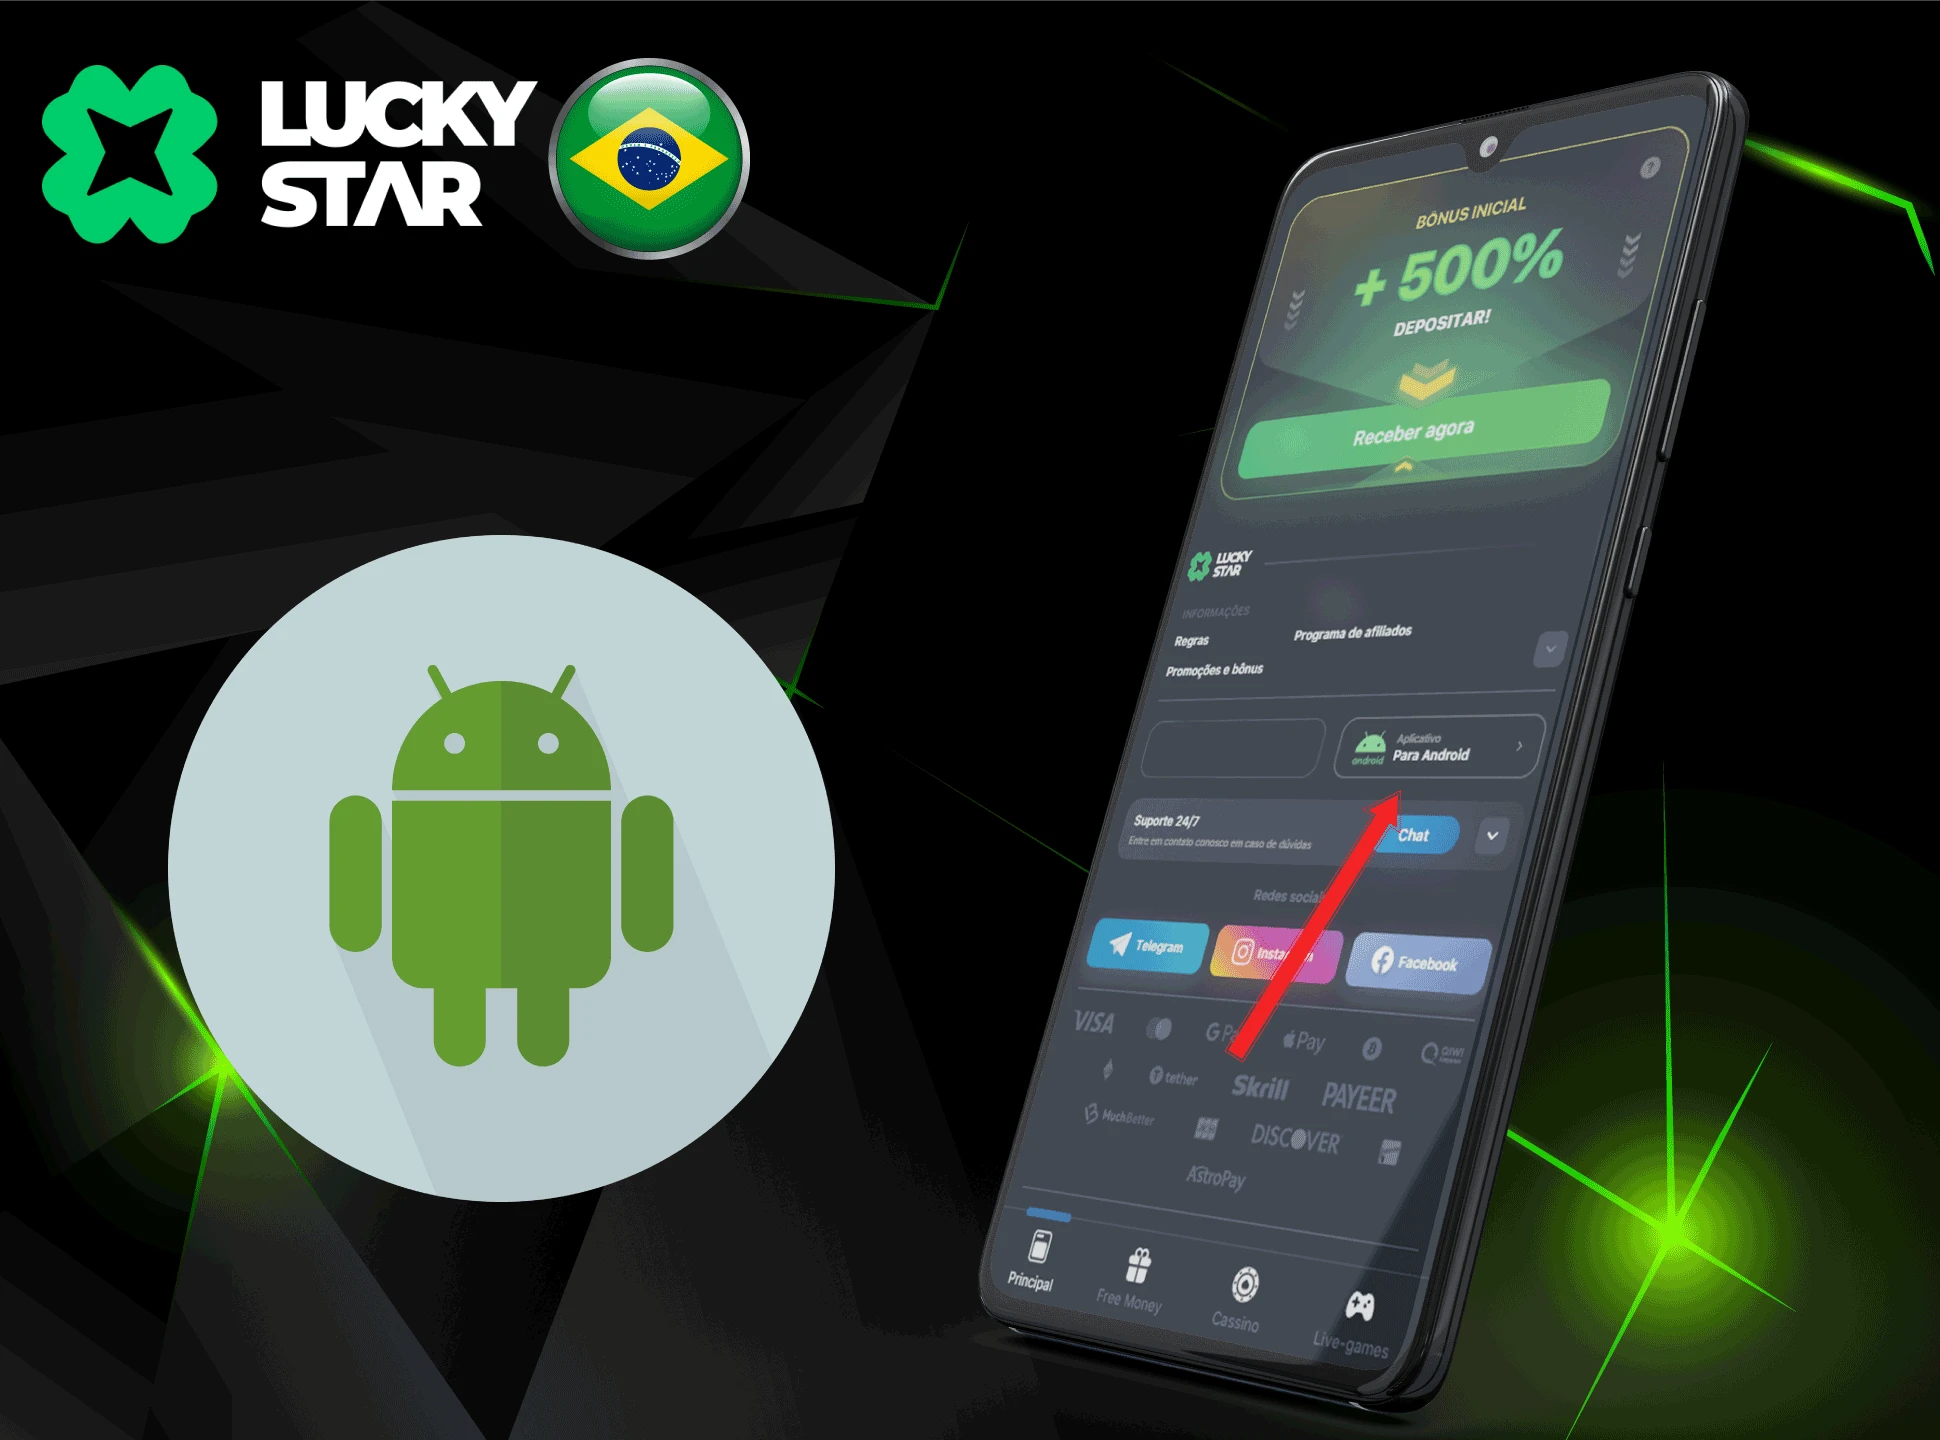 Instalar a versão móvel do casino na plataforma Android